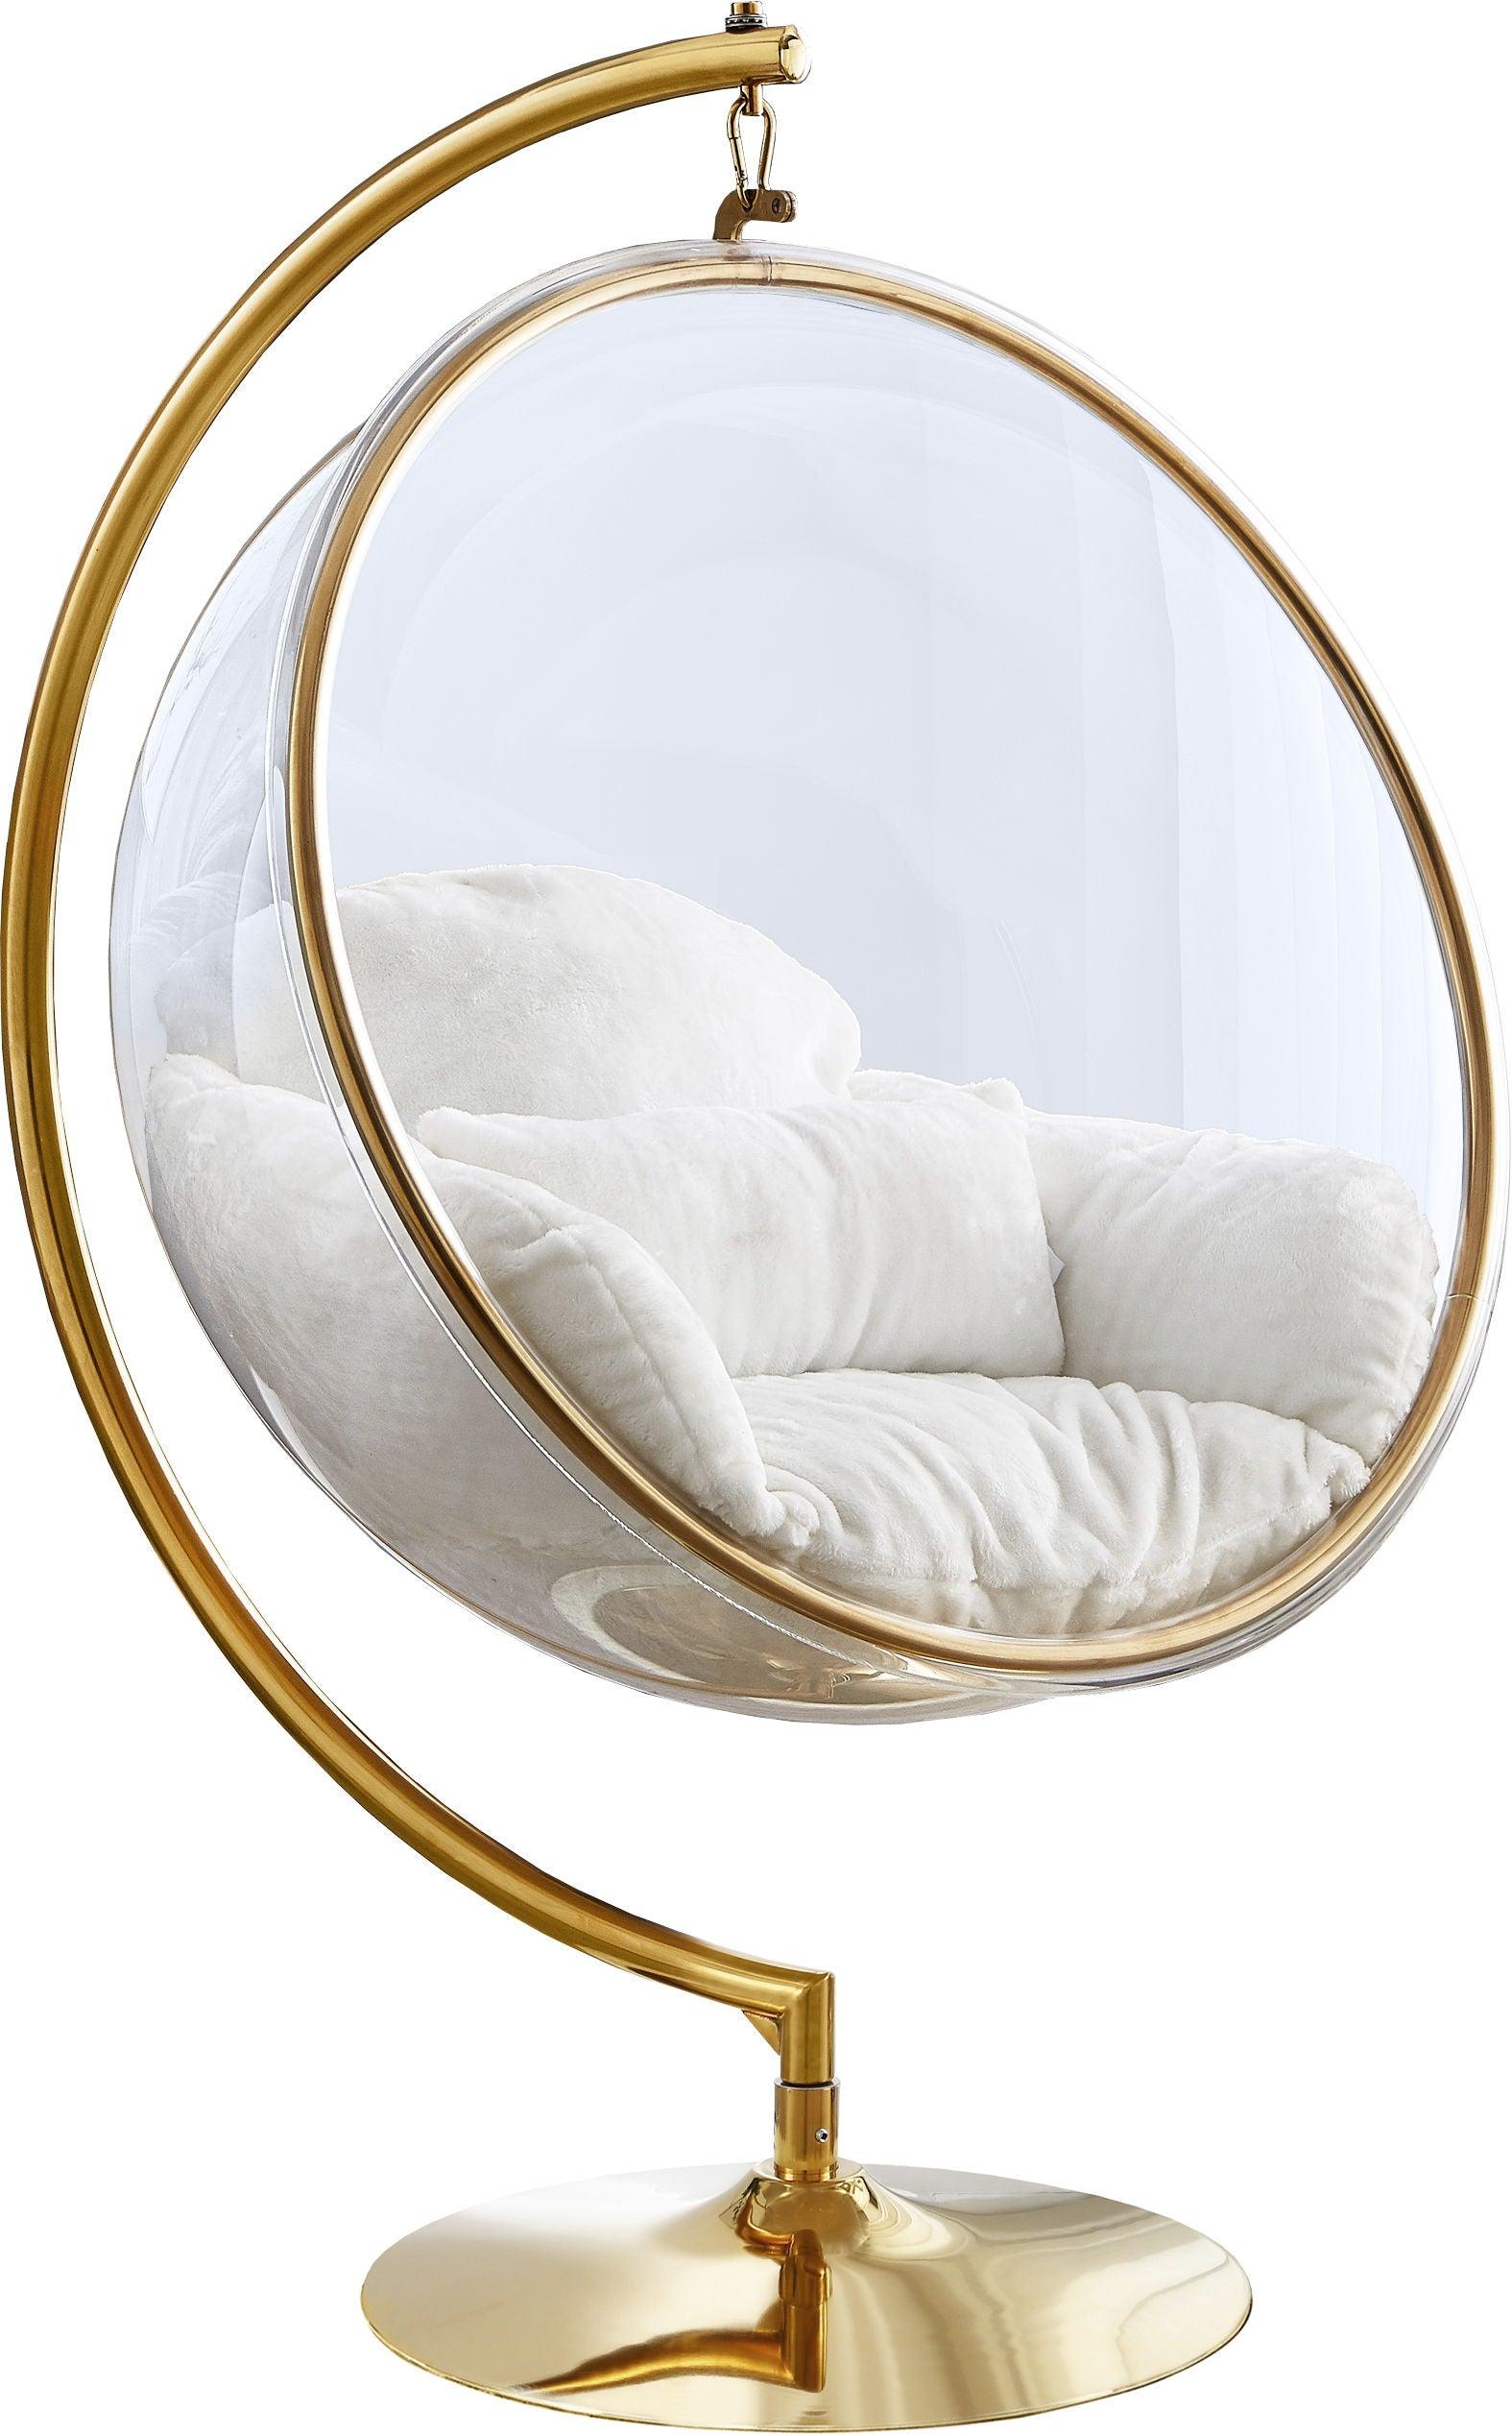 Meridian Furniture - Luna - Swing Accent Chair - White - 5th Avenue Furniture